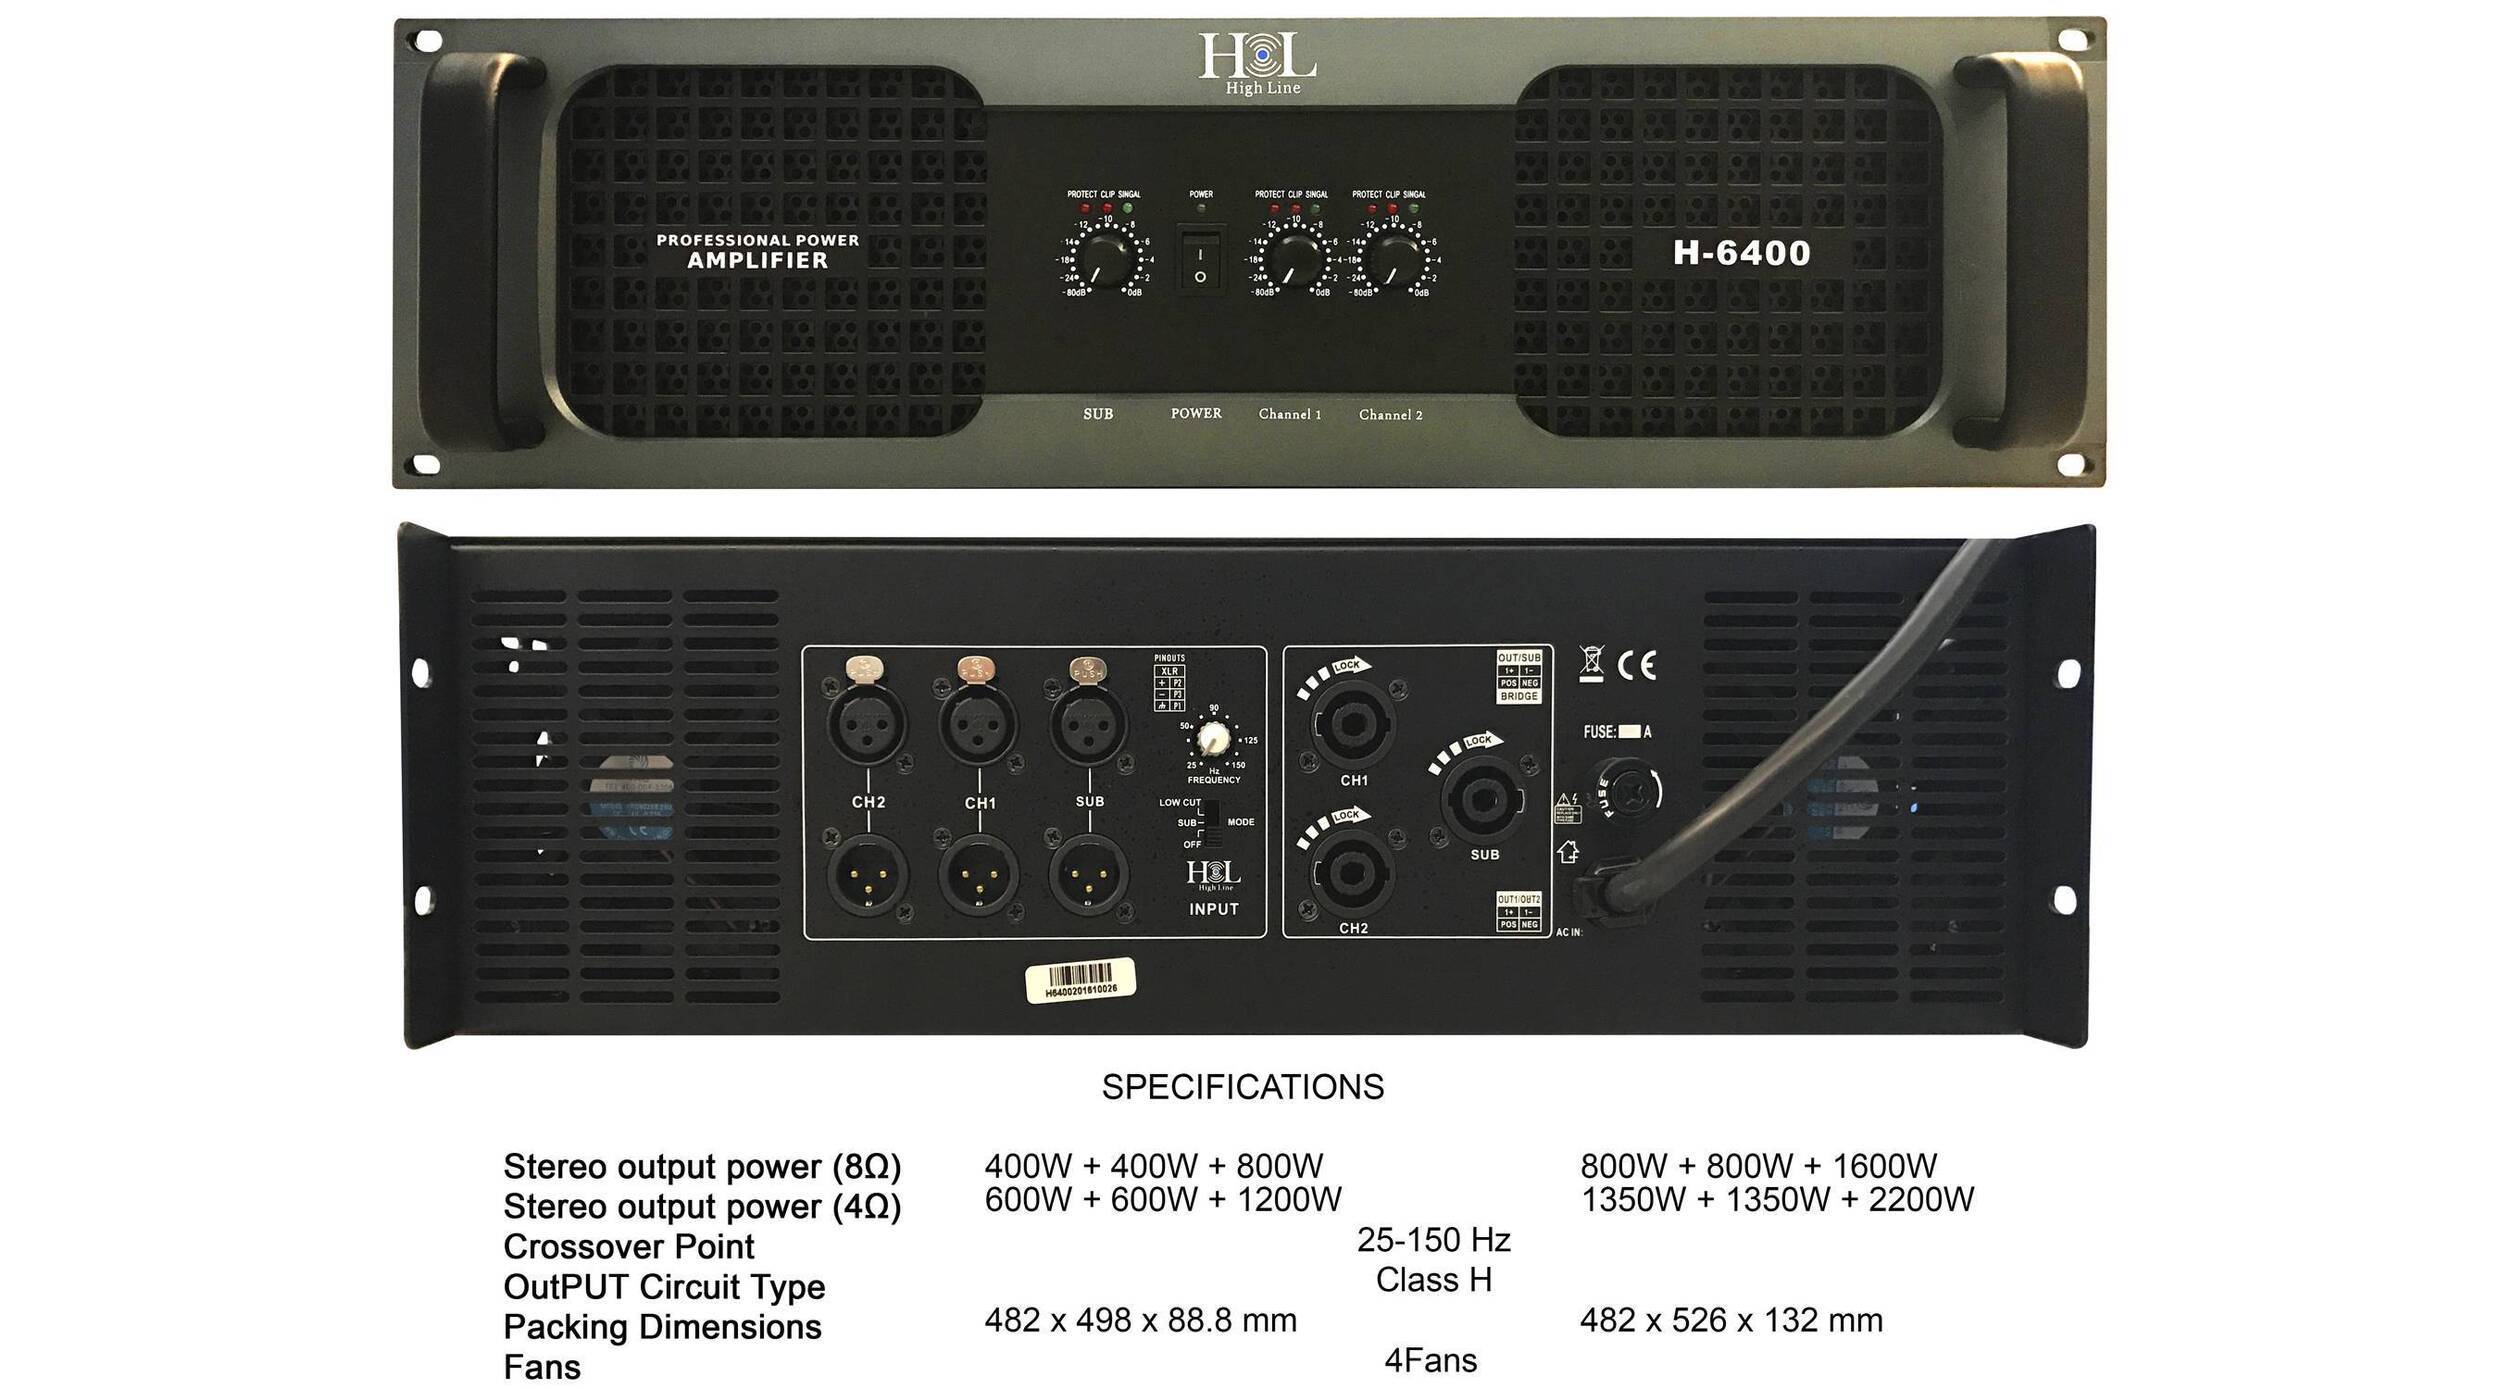 H-6400,  AMPLIFICADOR DE 3 CANALES DE 6400 WATTS HIGH LINE